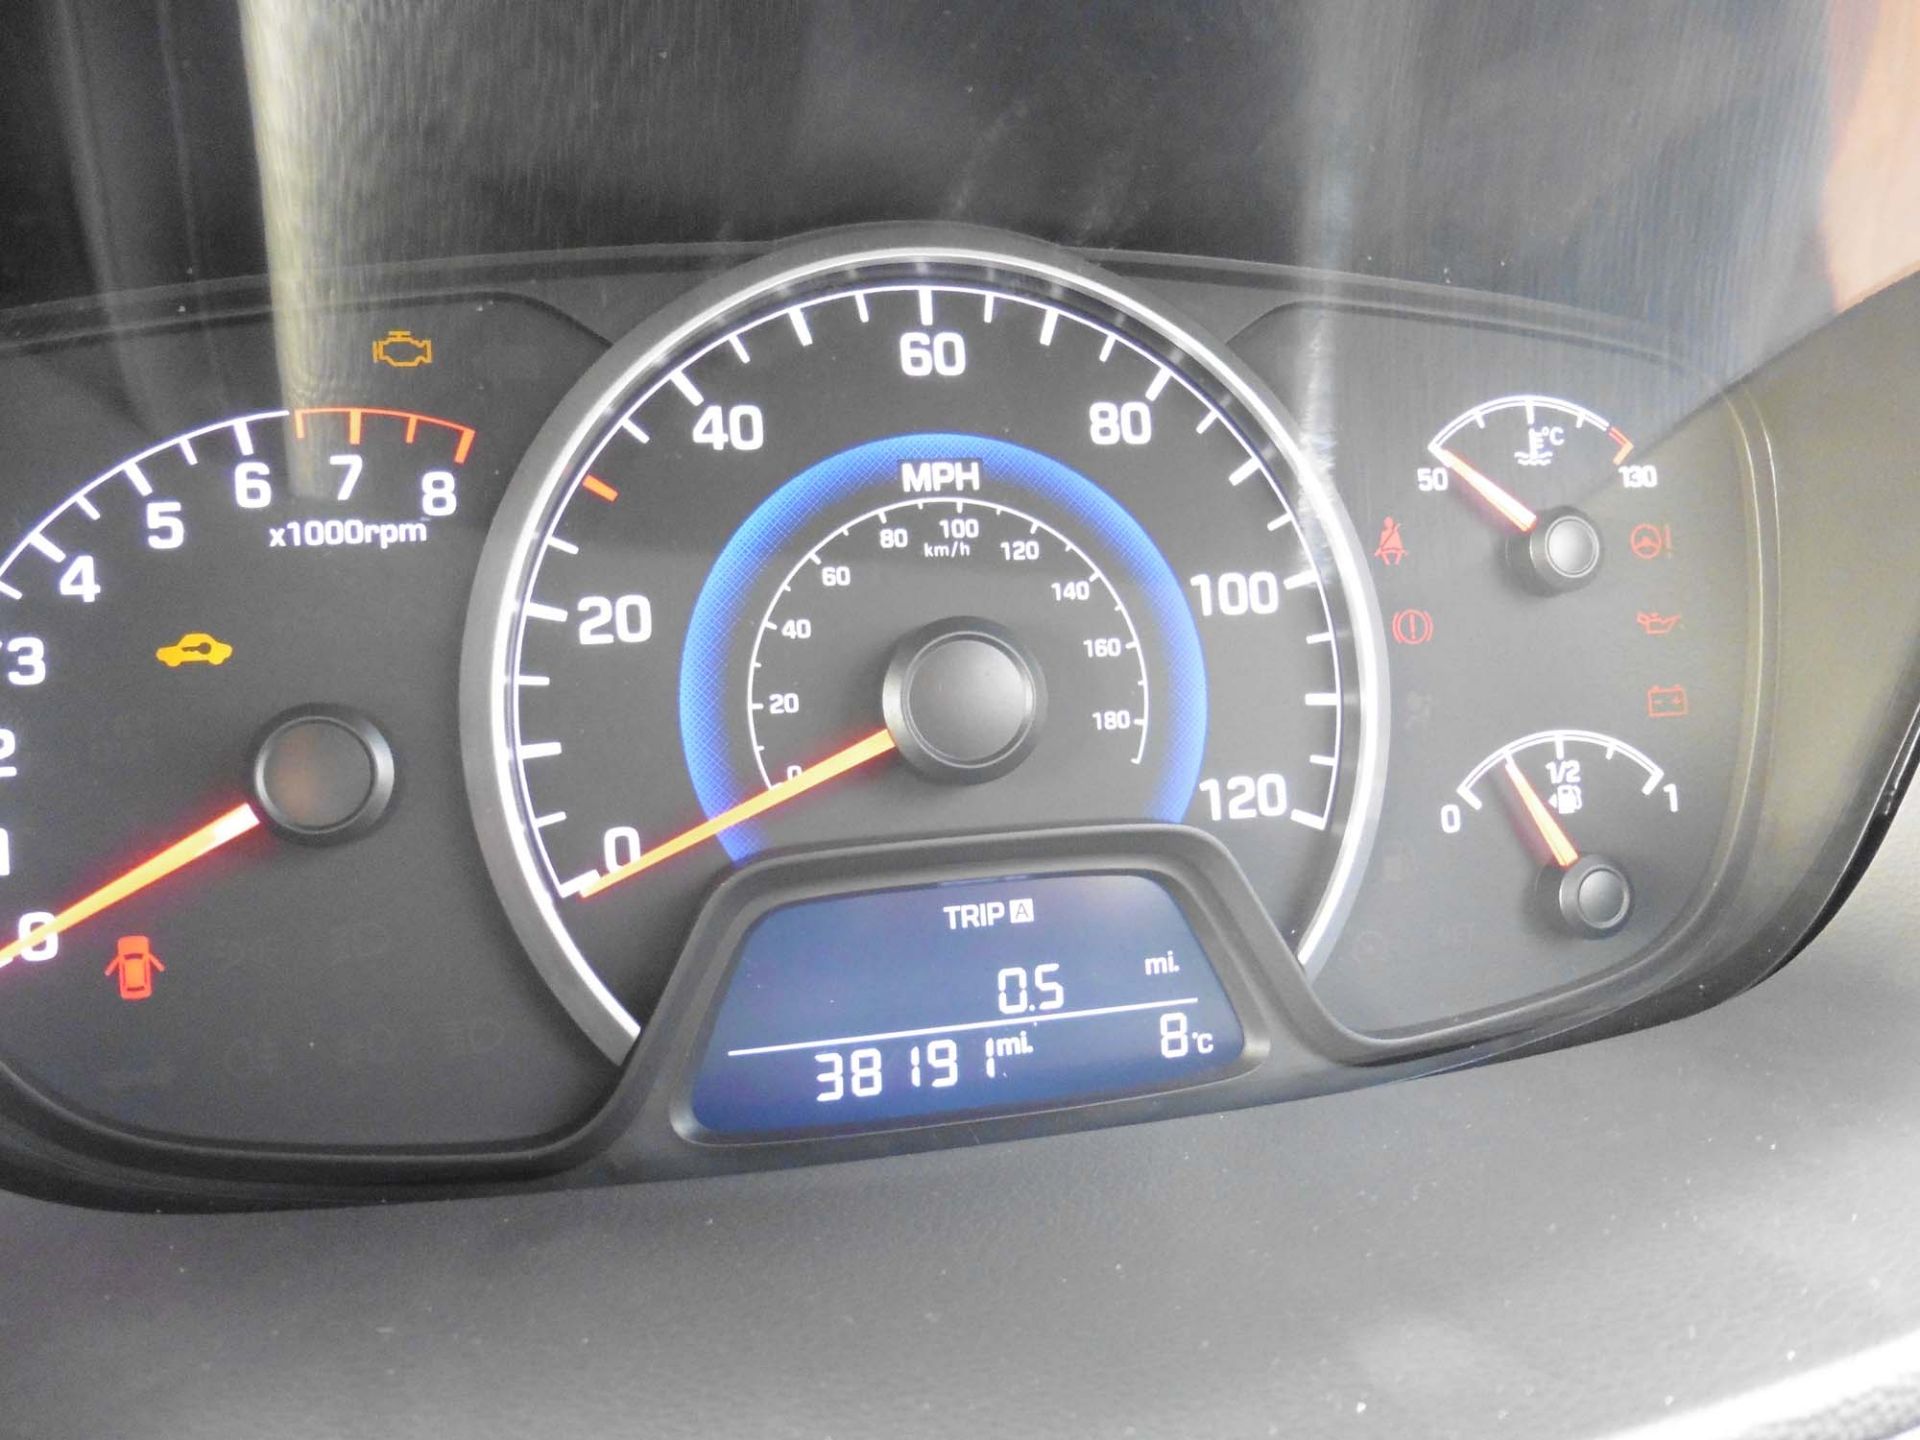 Hyundai i10 SE 988cc petrol hatchback Registration number: AE14 XGM First Registered: 03.03.2014 - Image 9 of 9